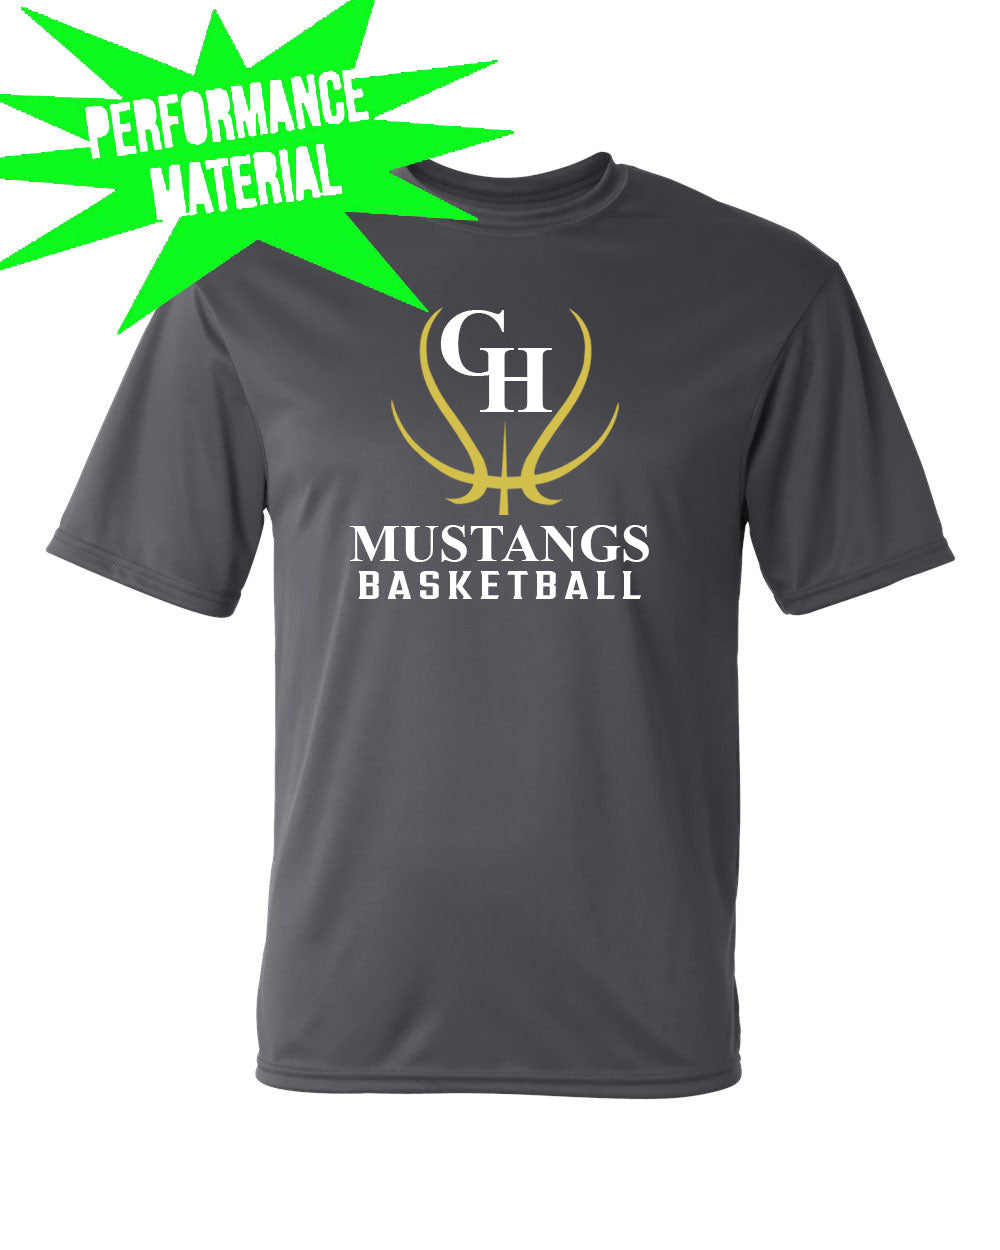 Green Hills Basketball Performance Material T-Shirt Design 7